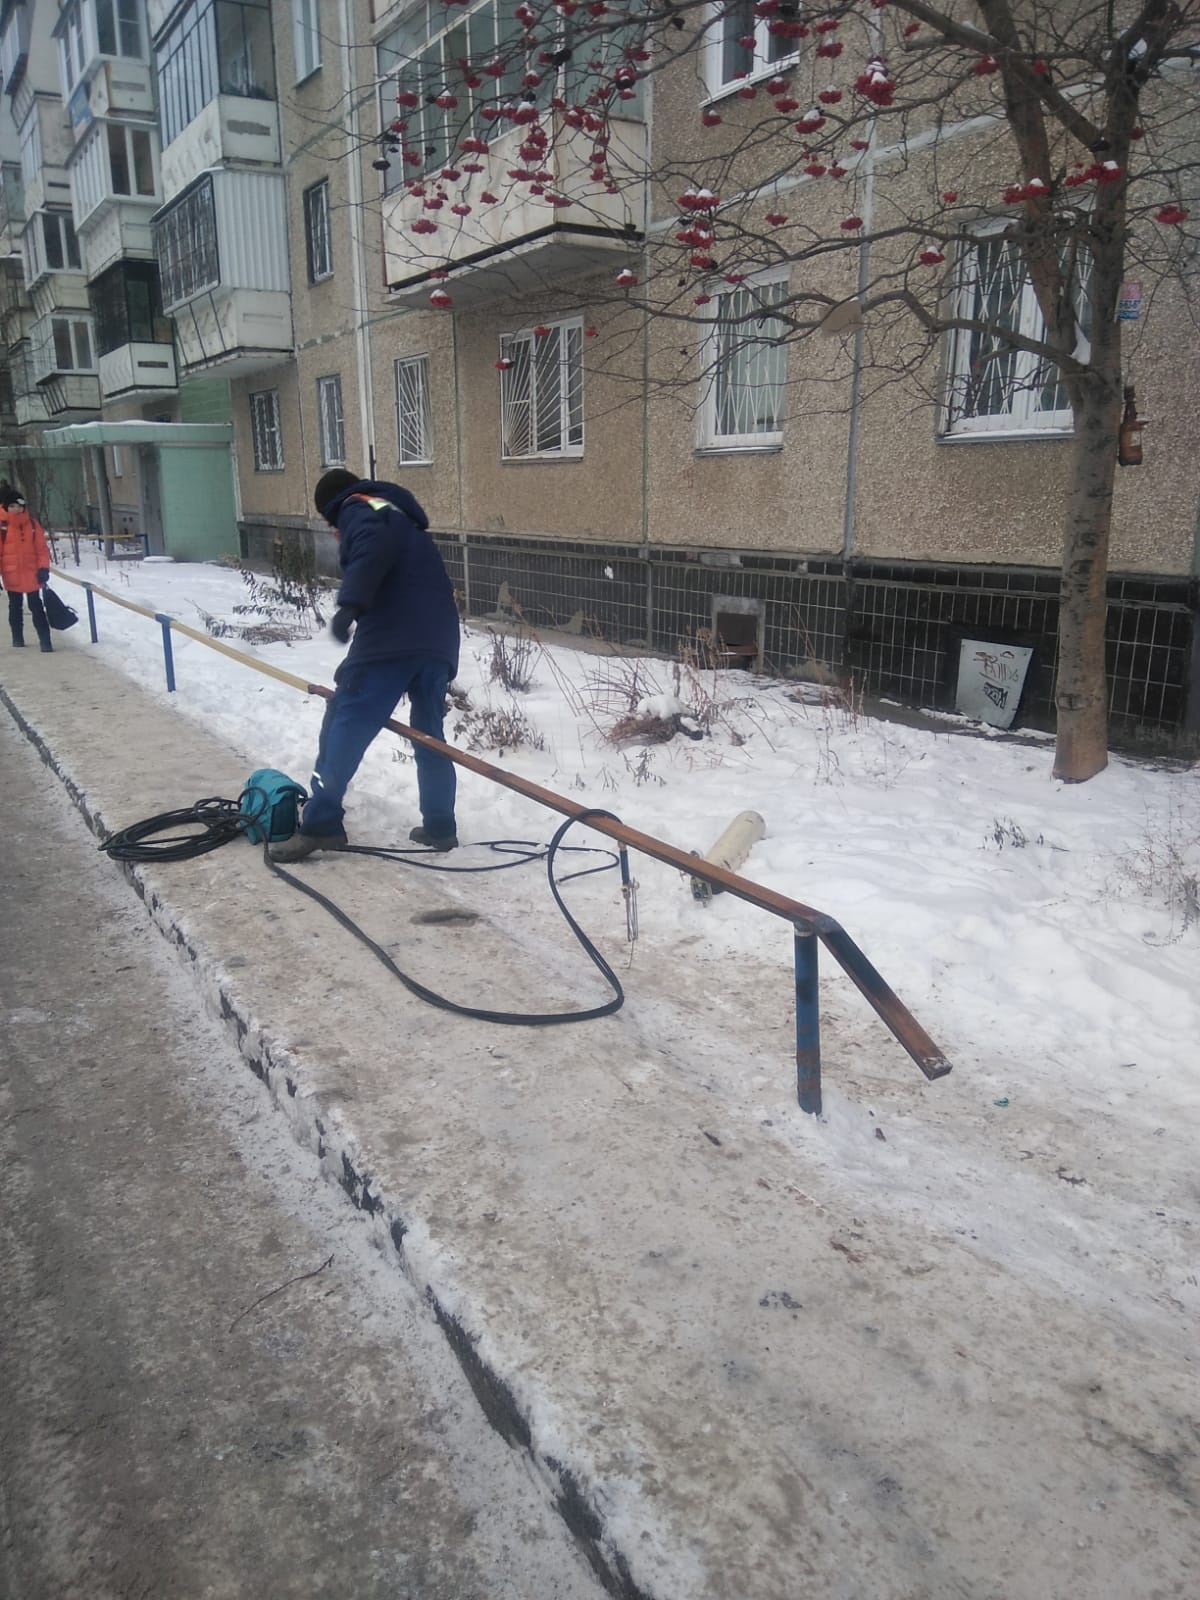 УК "ЖКХ Новые Люди" выполнила работы по ремонту ограждение газона во дворе дома по адресу Чичерина 35 Б.